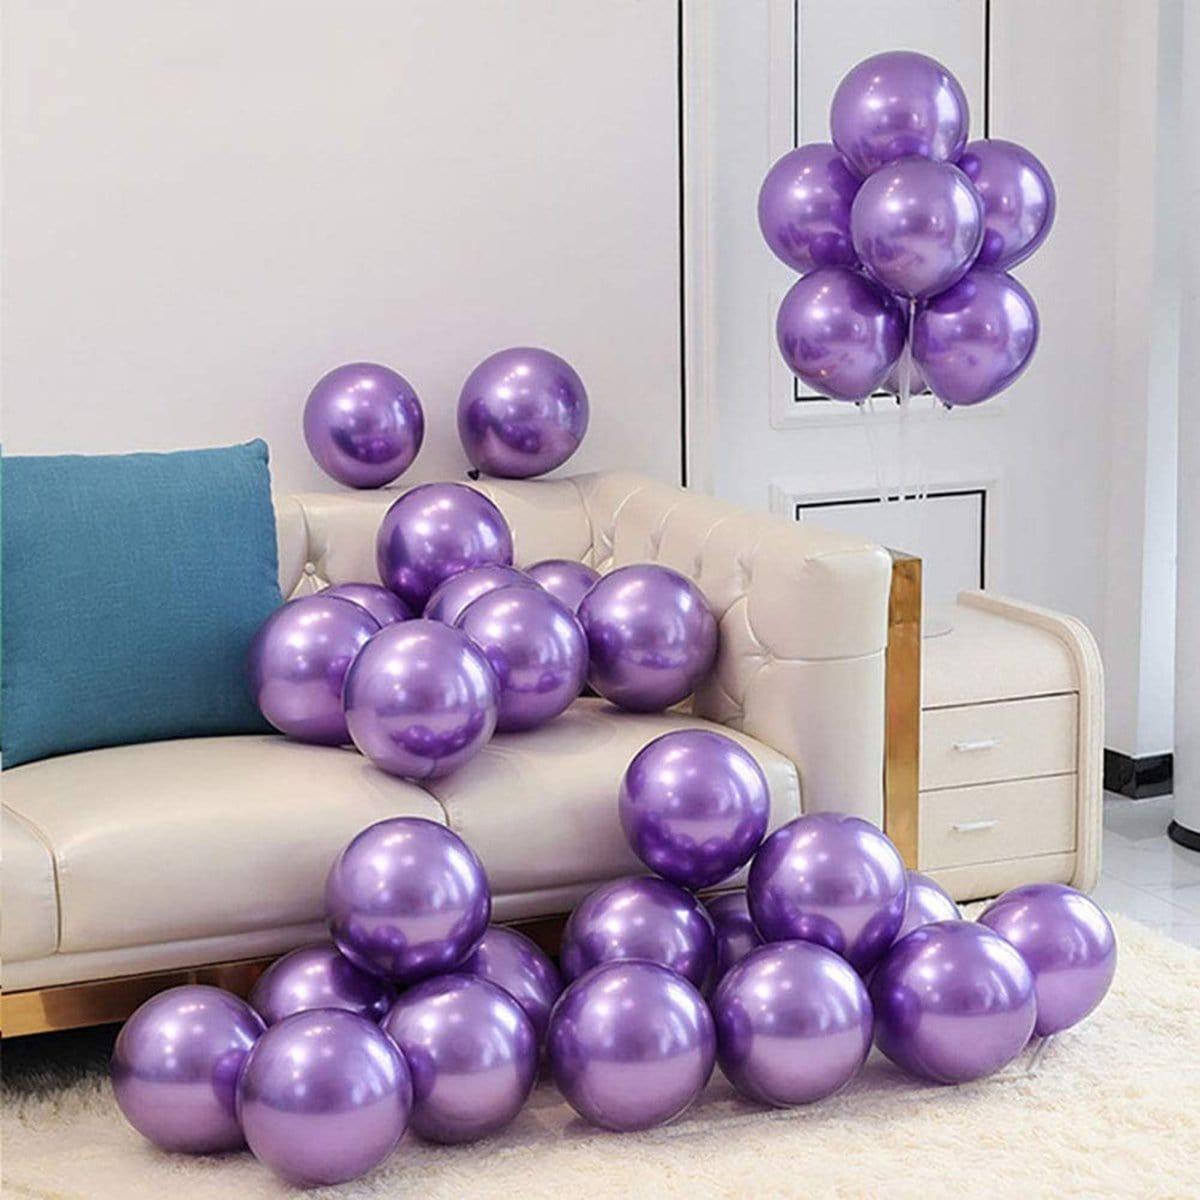 Ballon de baudruche latex : 5 ballons violet métallisé - décoration  anniversaire fête